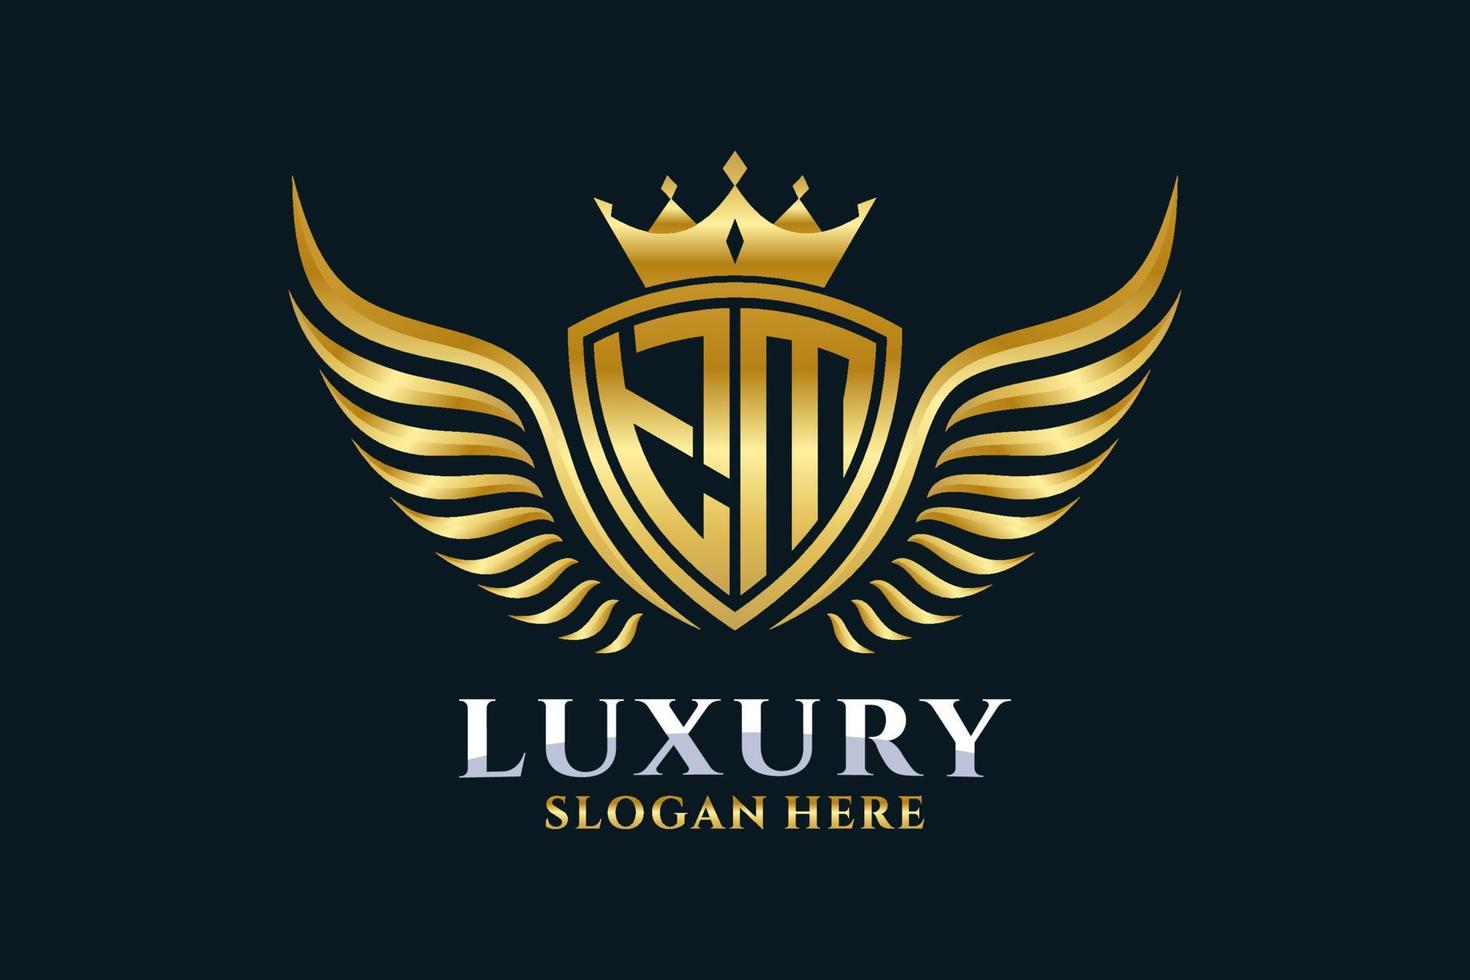 luxo royal wing letter tm crest gold color logo vector, logotipo da vitória, logotipo da crista, logotipo da asa, modelo de logotipo vetorial. vetor